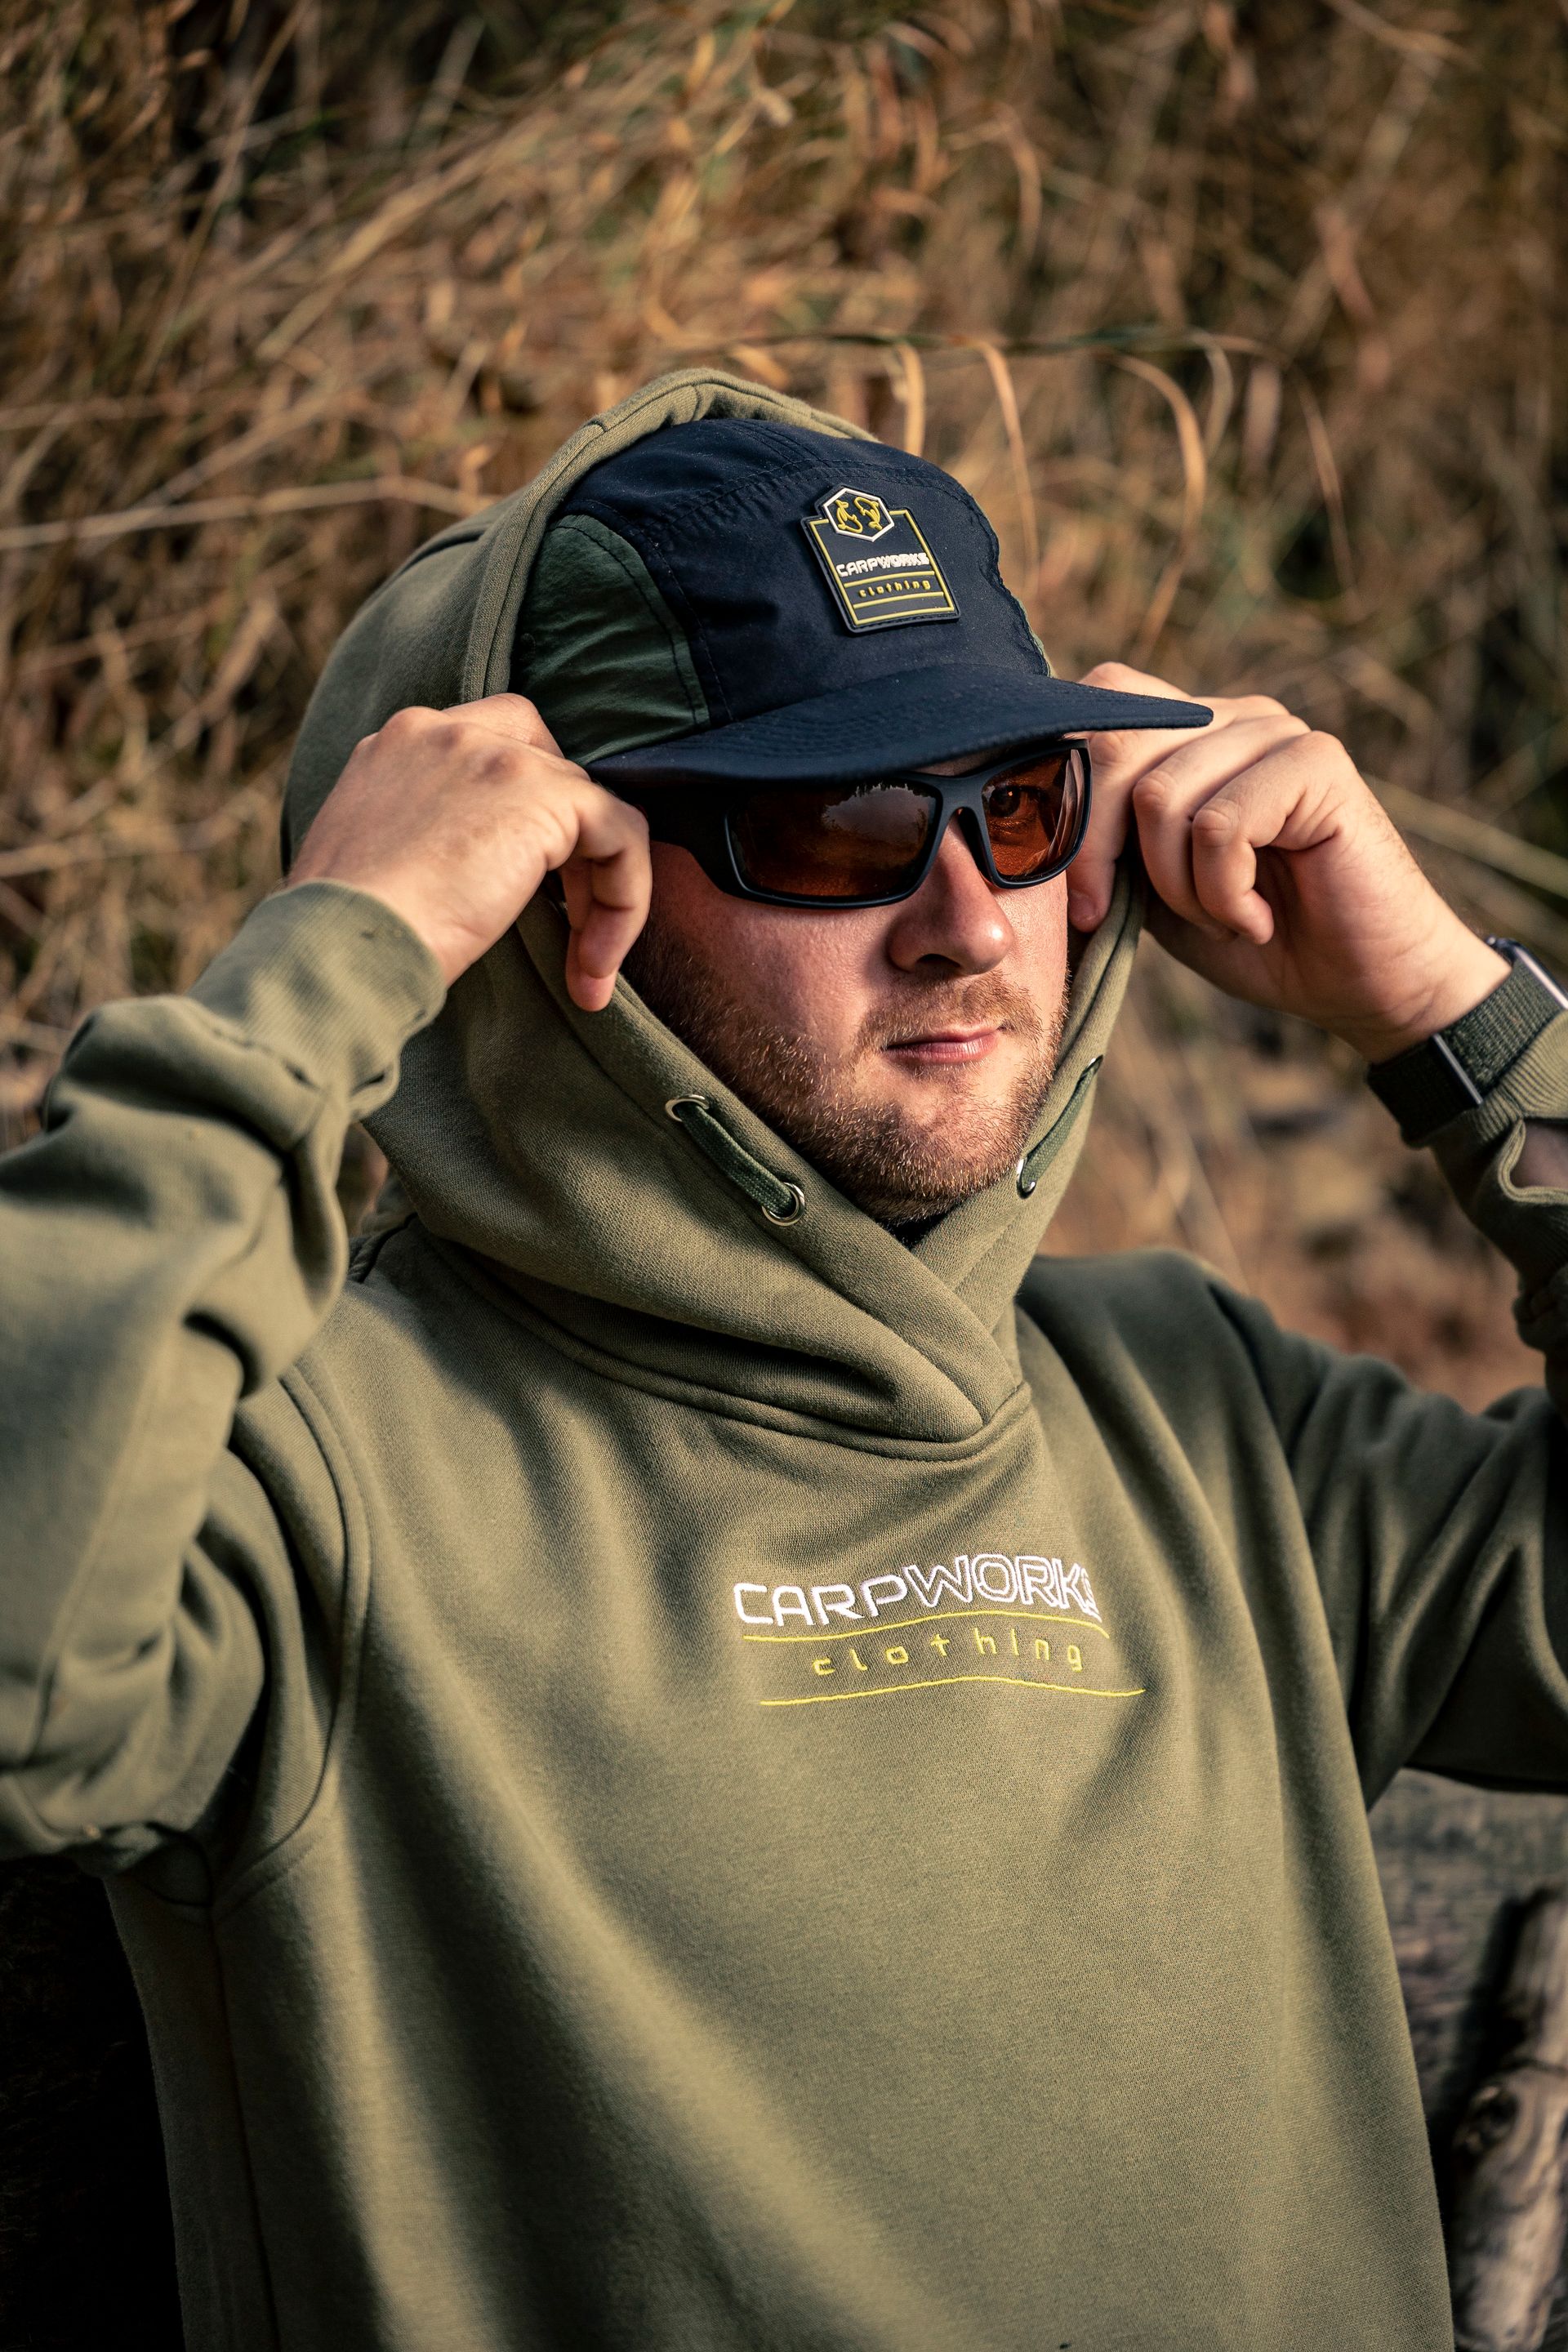 Carpworks Clothing - Premium Carp Fishing Apparel